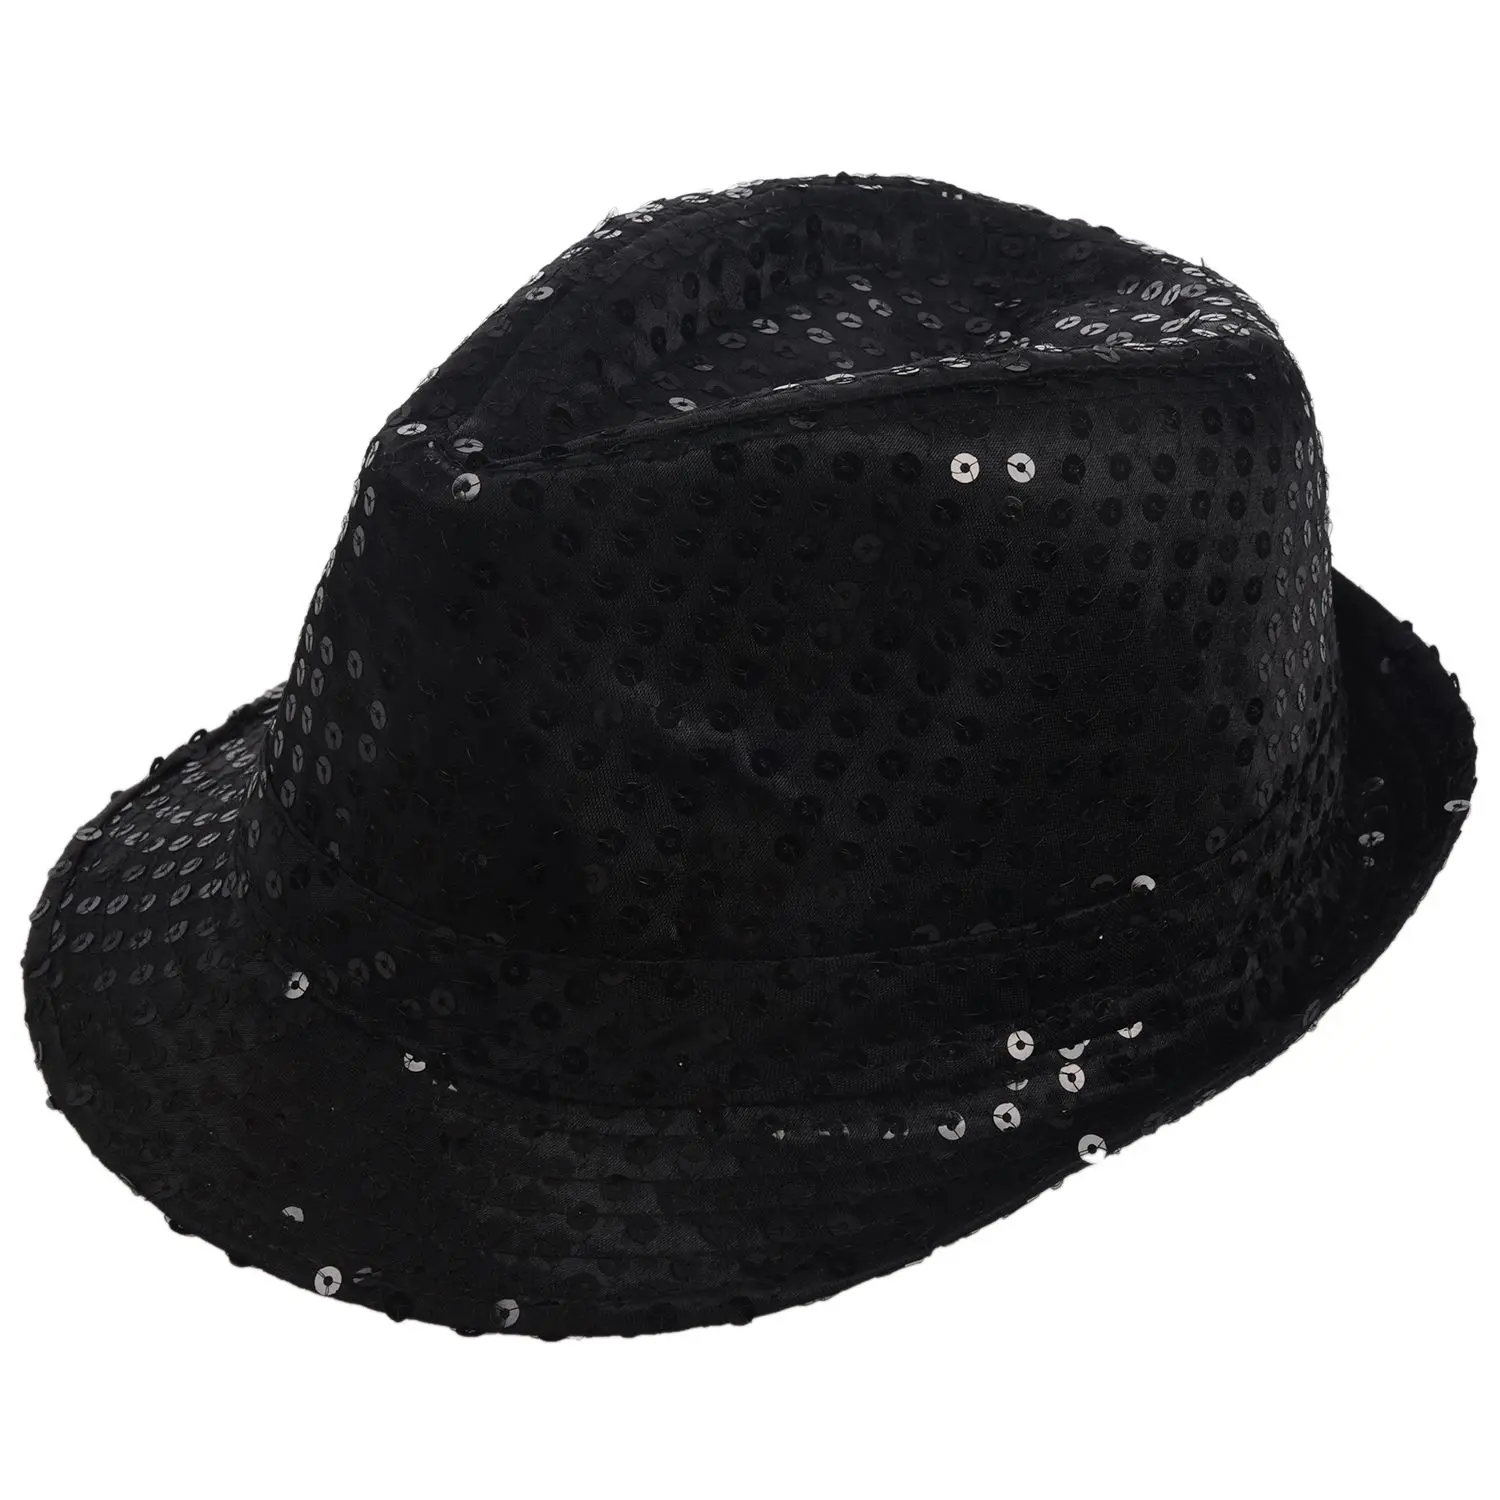 Блестящая шляпа Трилби топ шляпа нарядное платье Вечерние девичник ночной танец театральные шоу, черный - Цвет: Black